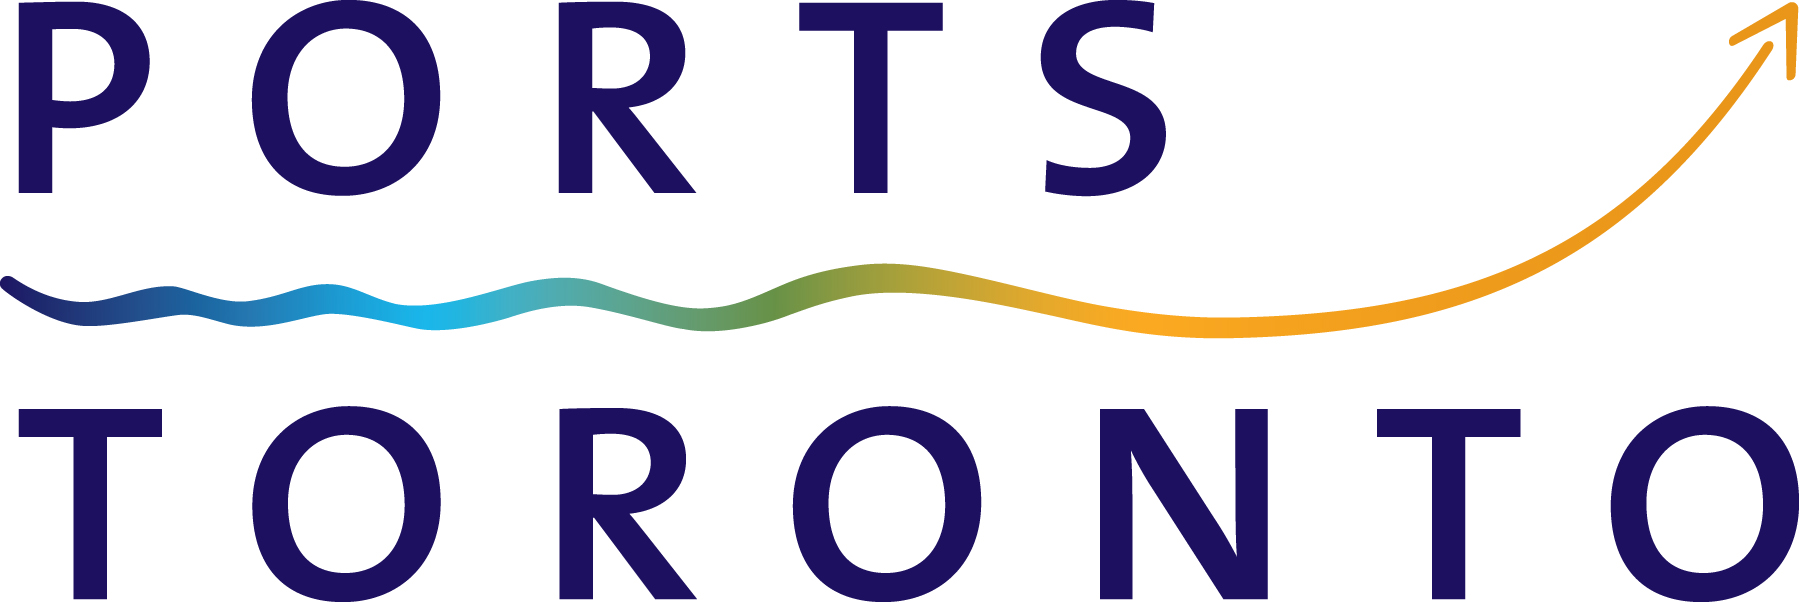 Organization logo of PortsToronto